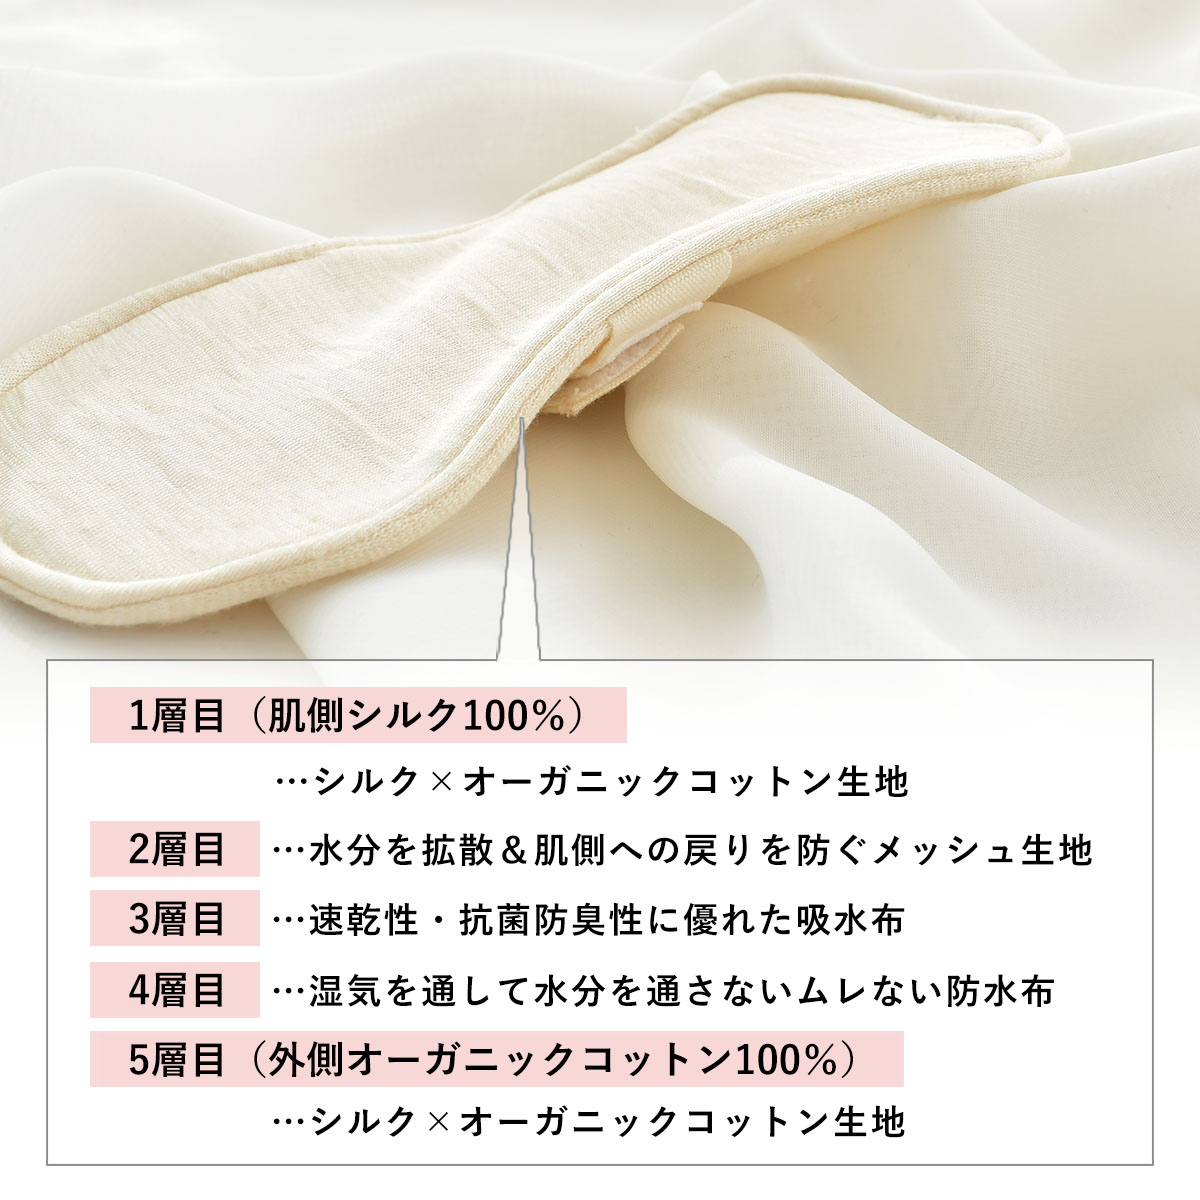 シルク 布ナプキン 軽失禁用 布ライナー 日本製 肌側シルク 外側オーガニックコットン